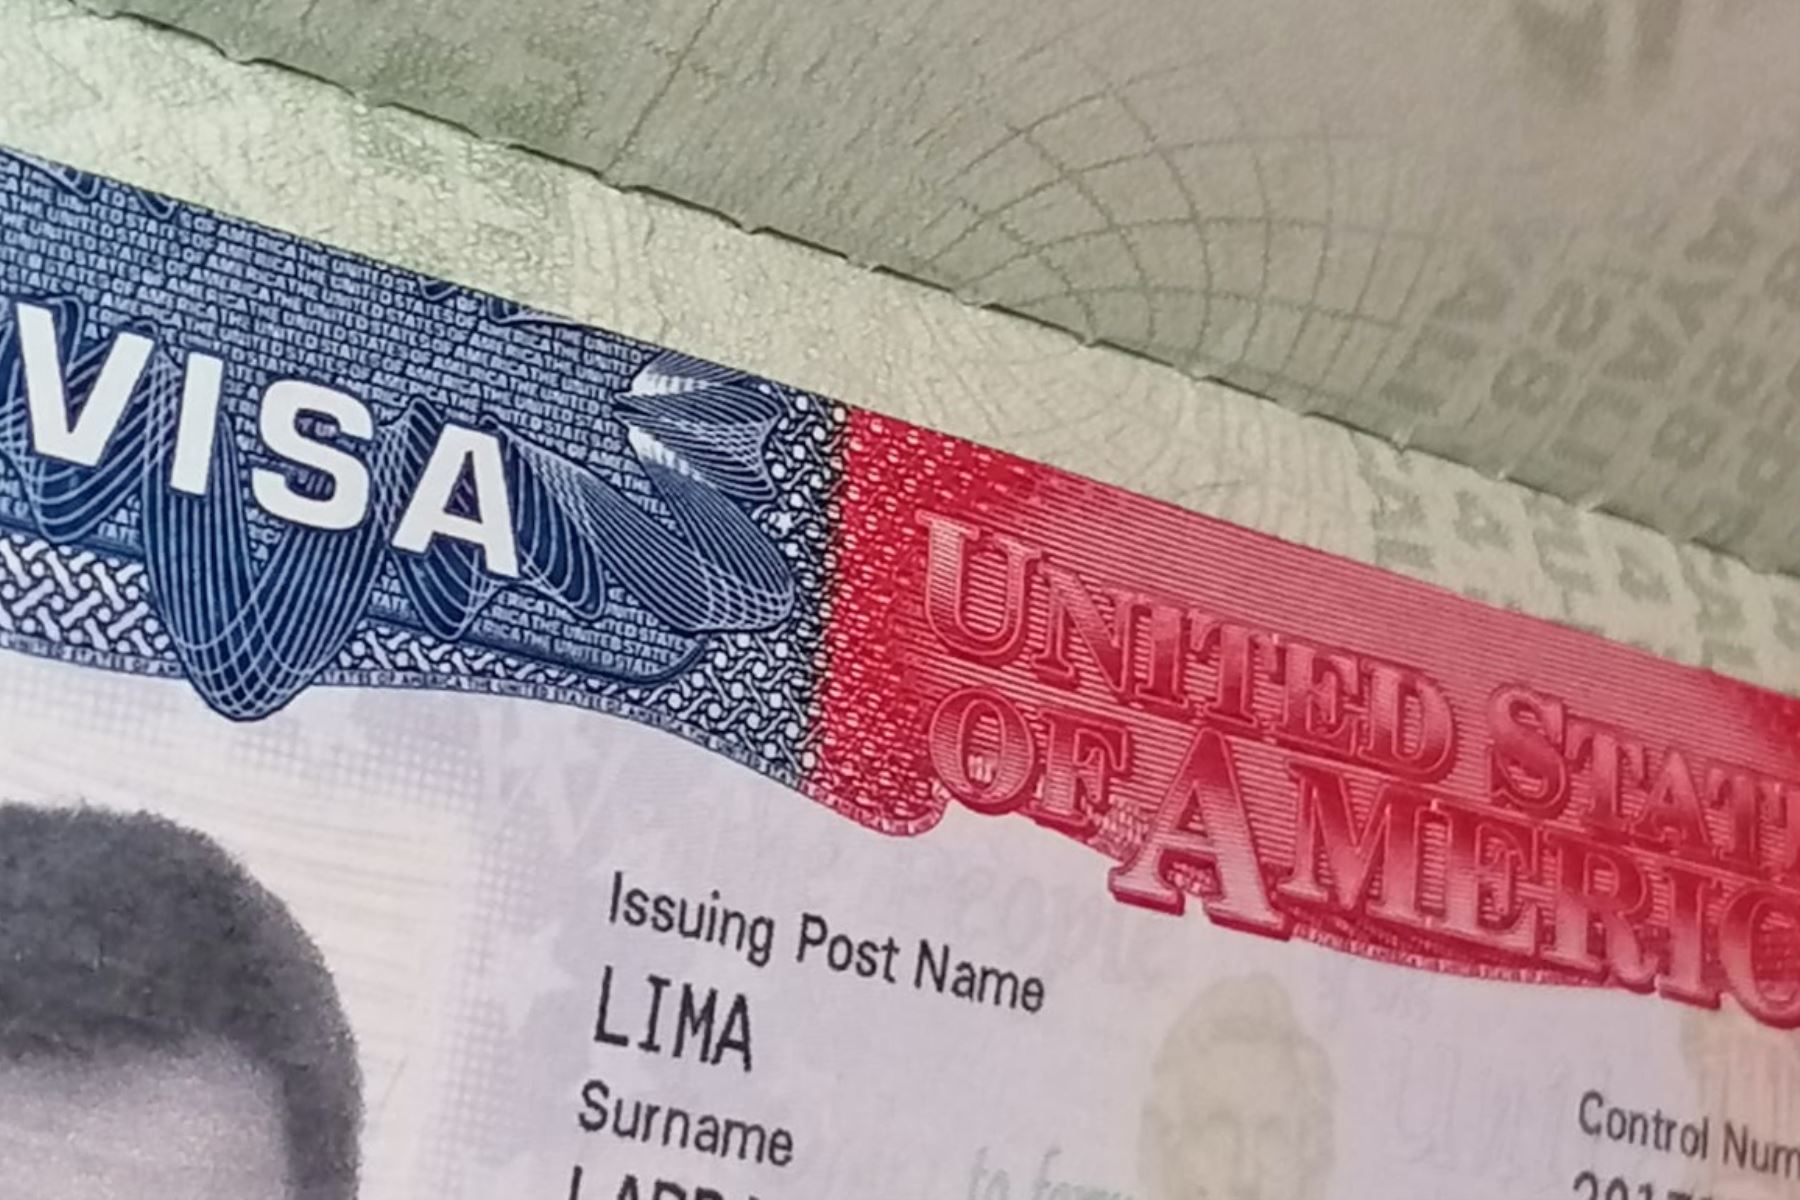 Ahora es posible renovar la visa americana en un periodo corto, entre dos a tres semanas, y sin necesidad de entrevista, informa embajada de Estados Unidos. Foto: ANDINA.